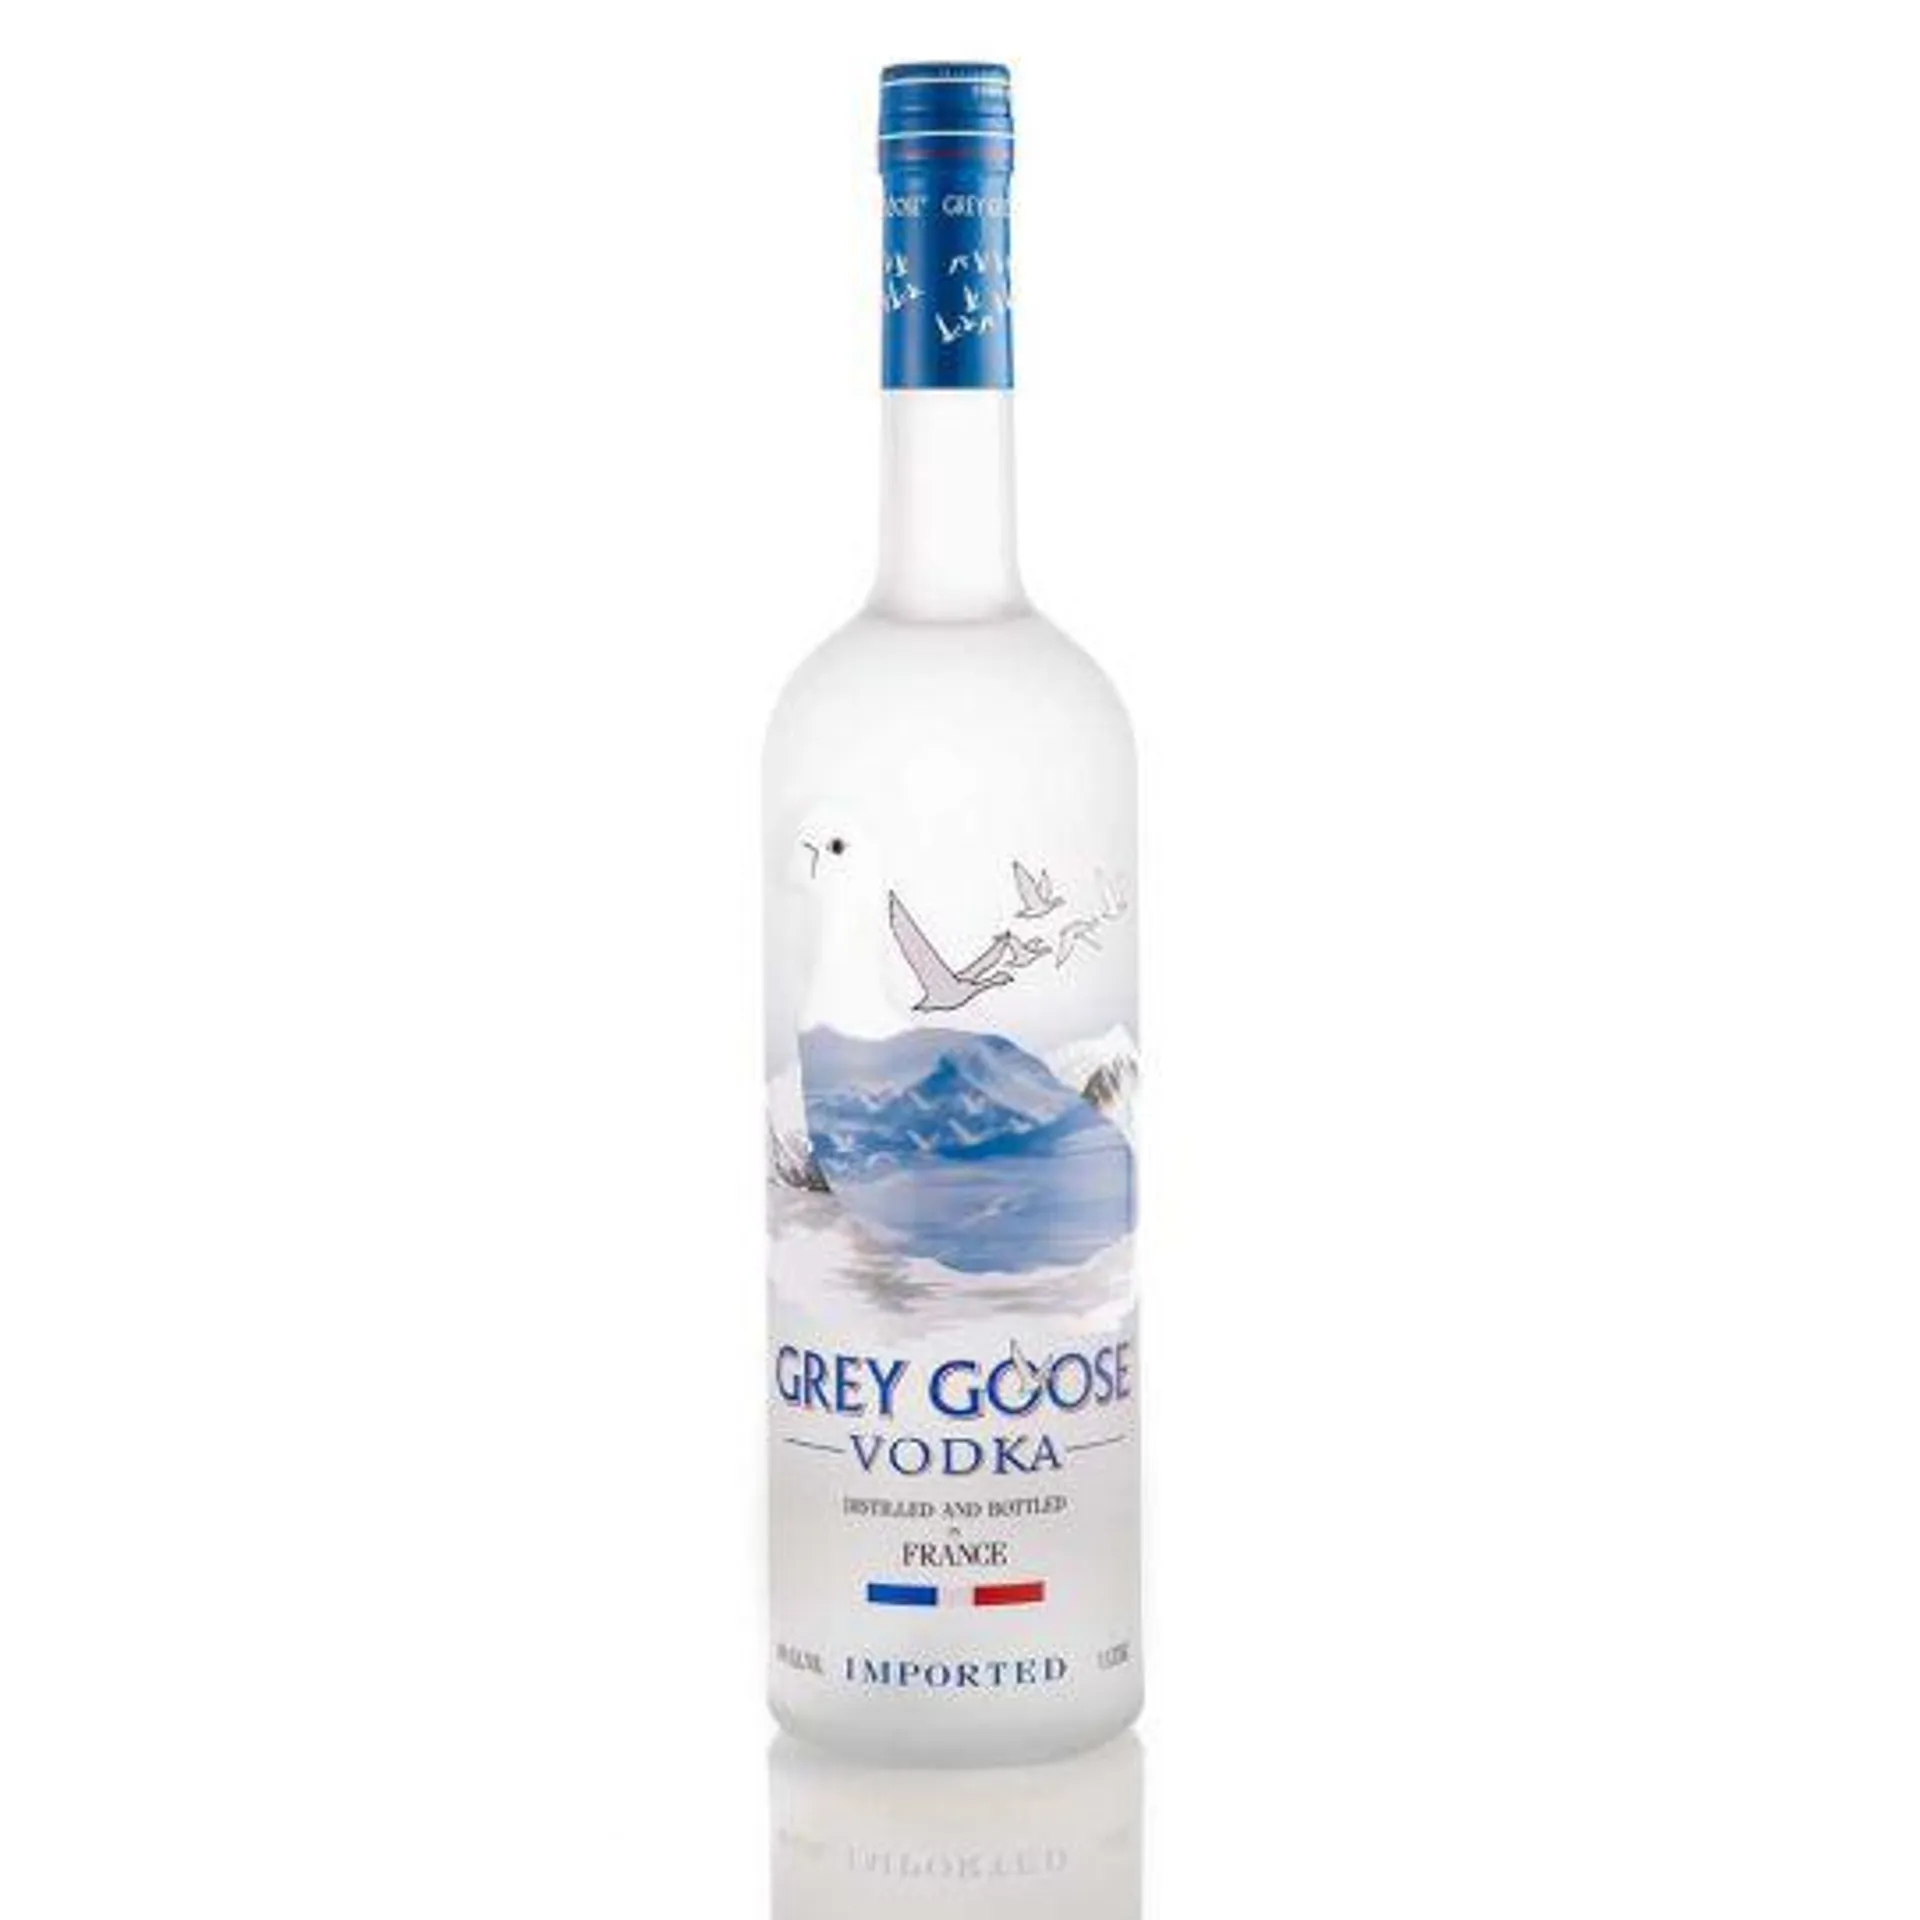 Grey Goose - Vodka Grey Goose Vodka